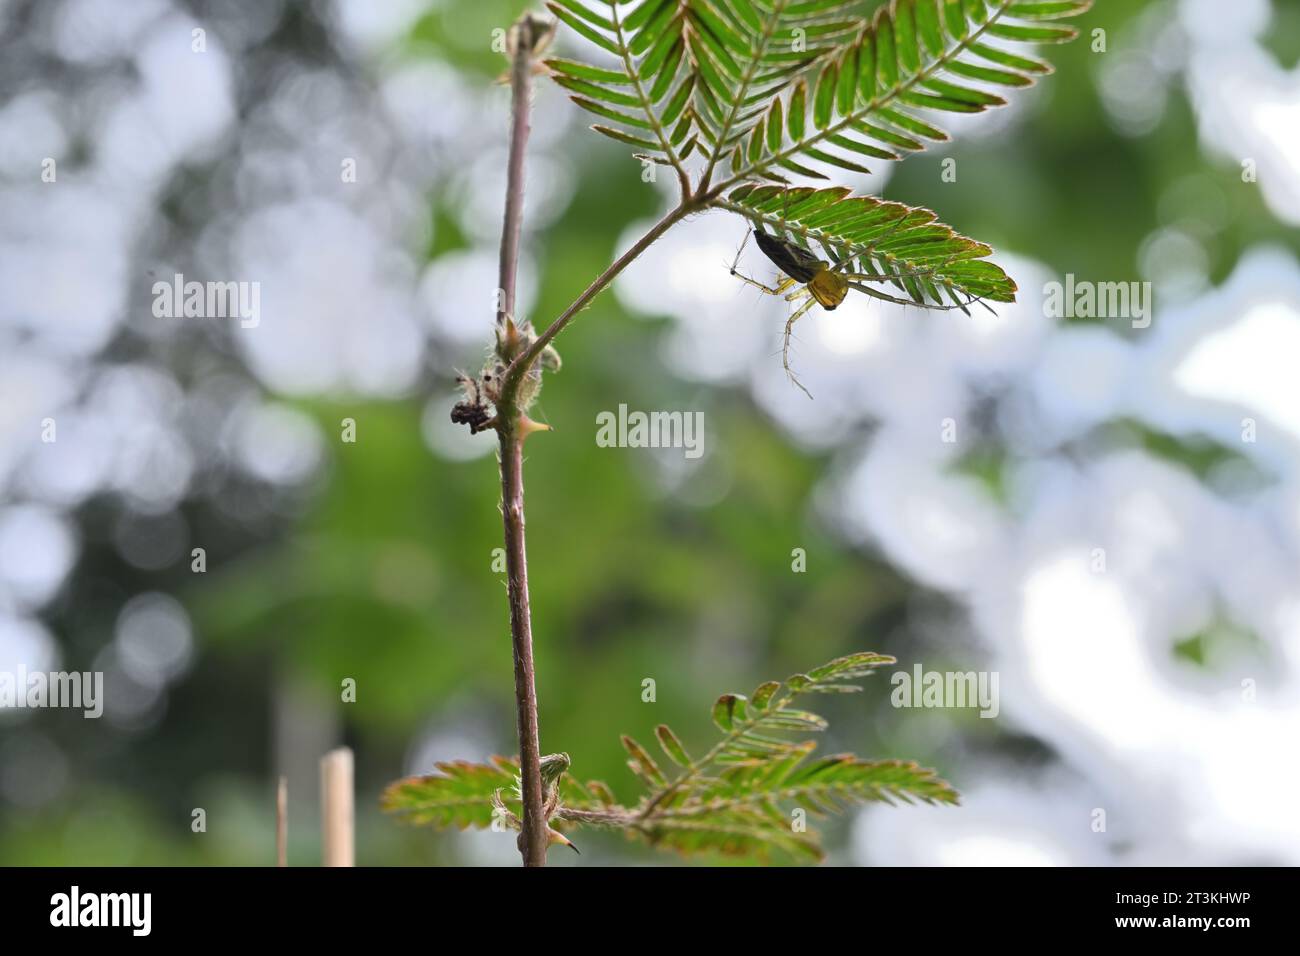 Vue à faible angle d'une plante sensible (Mimosa pudica) avec une araignée de lynx rayée assise sous le feuillet Banque D'Images